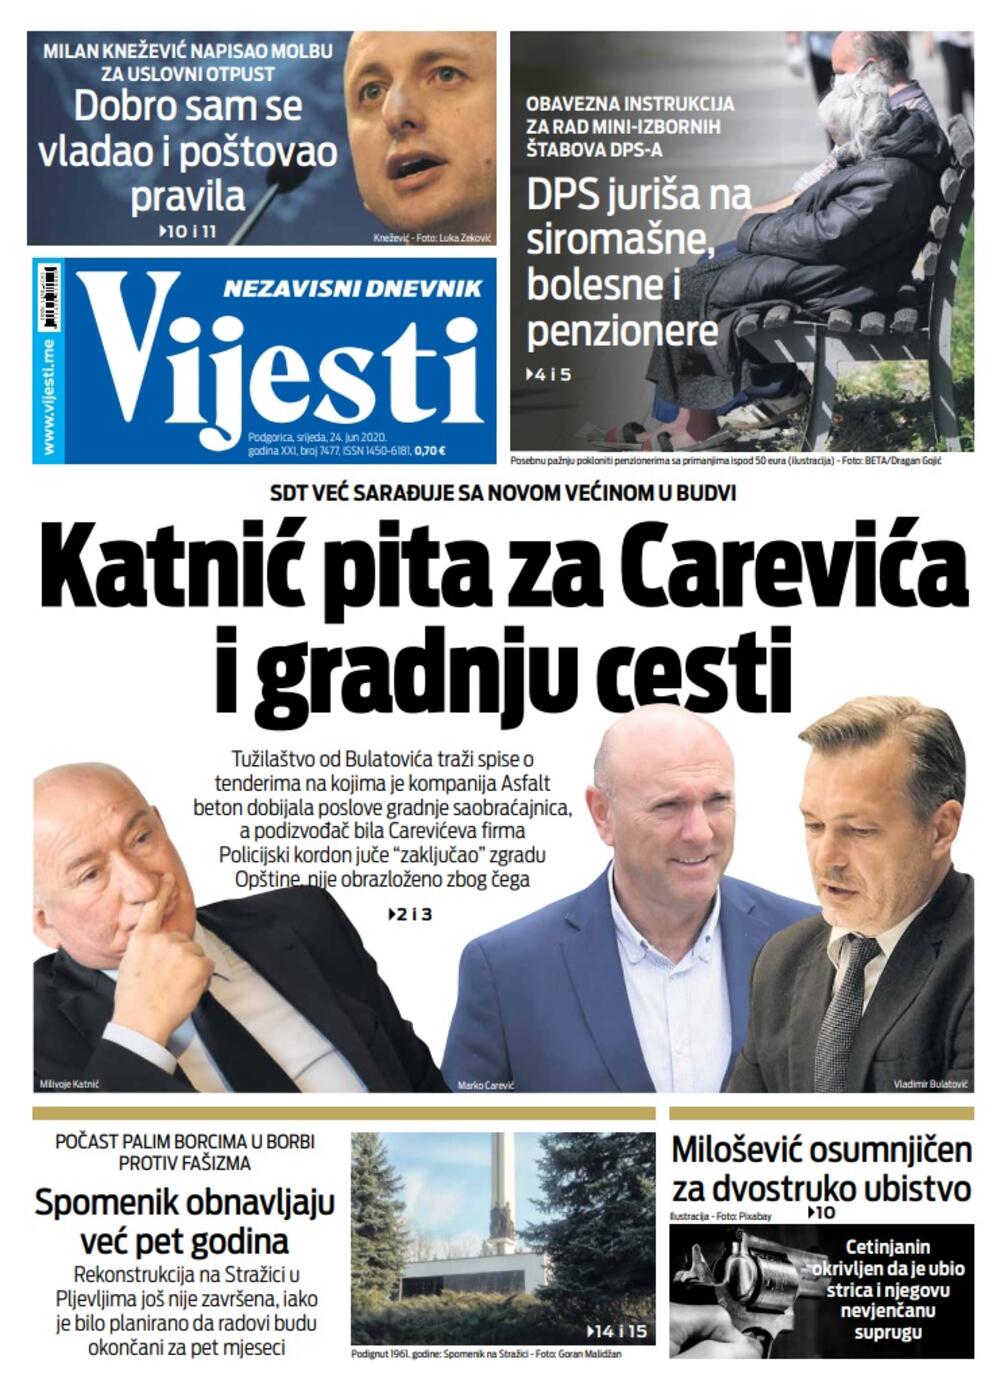 Naslovna strana "Vijesti" za 24. jun 2020., Foto: Vijesti